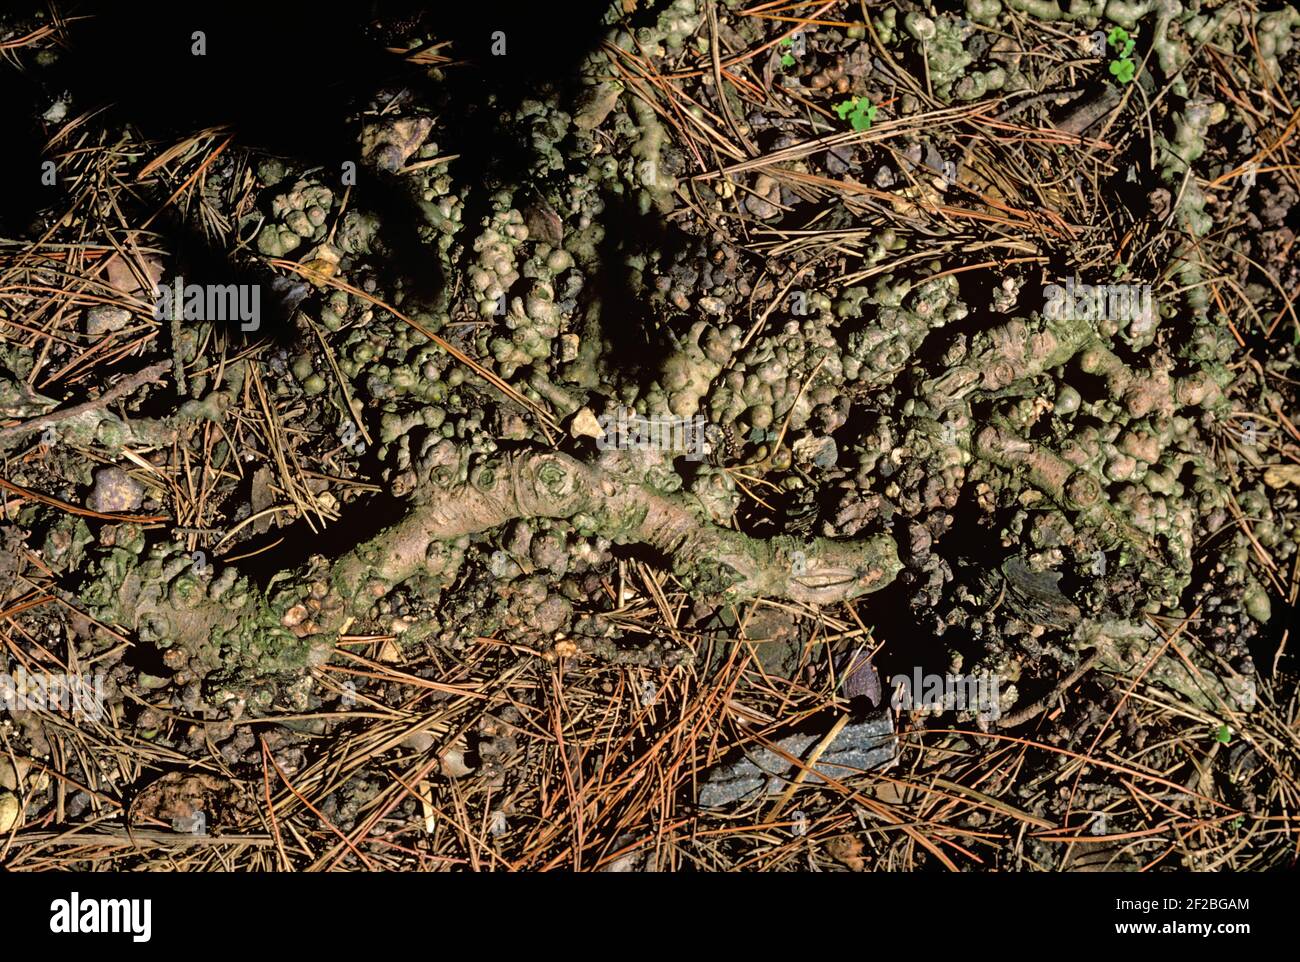 Dommages, nodules, formés et causés par des pucerons laineux (Eriosoma lanigerum) se nourrissant des racines et des pommiers, en Afrique du Sud Banque D'Images